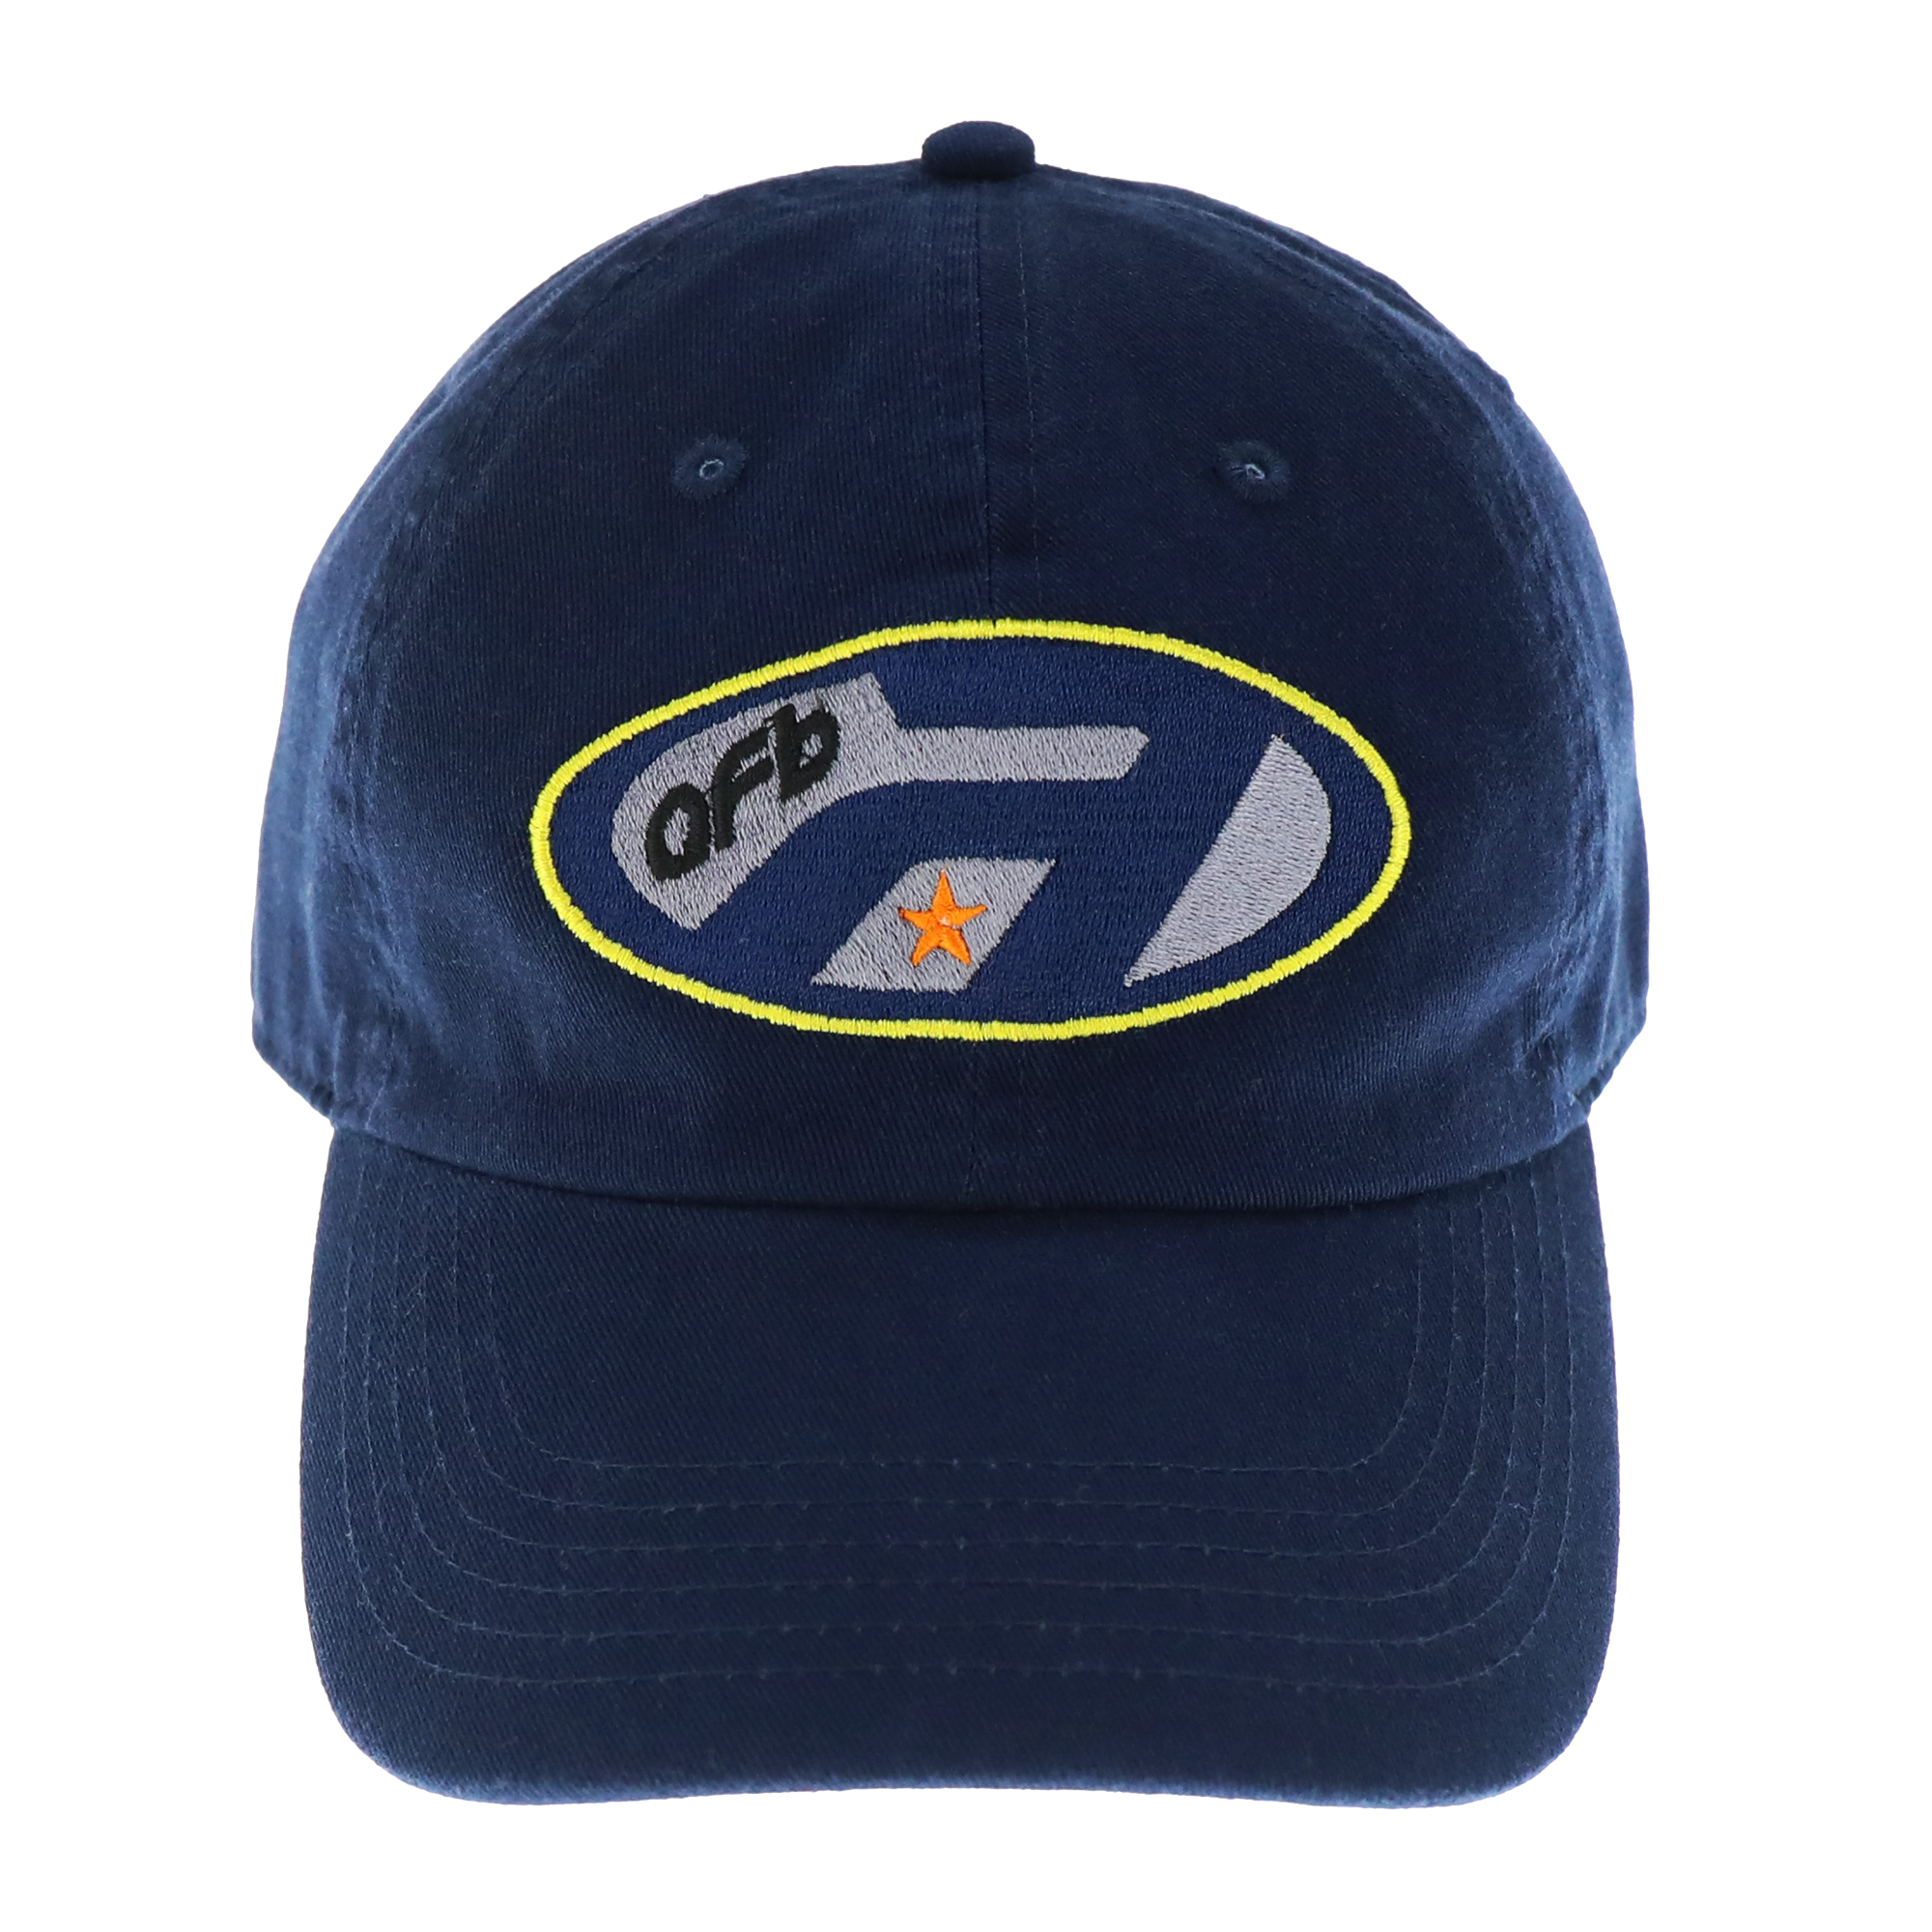 A SNIPER CAP